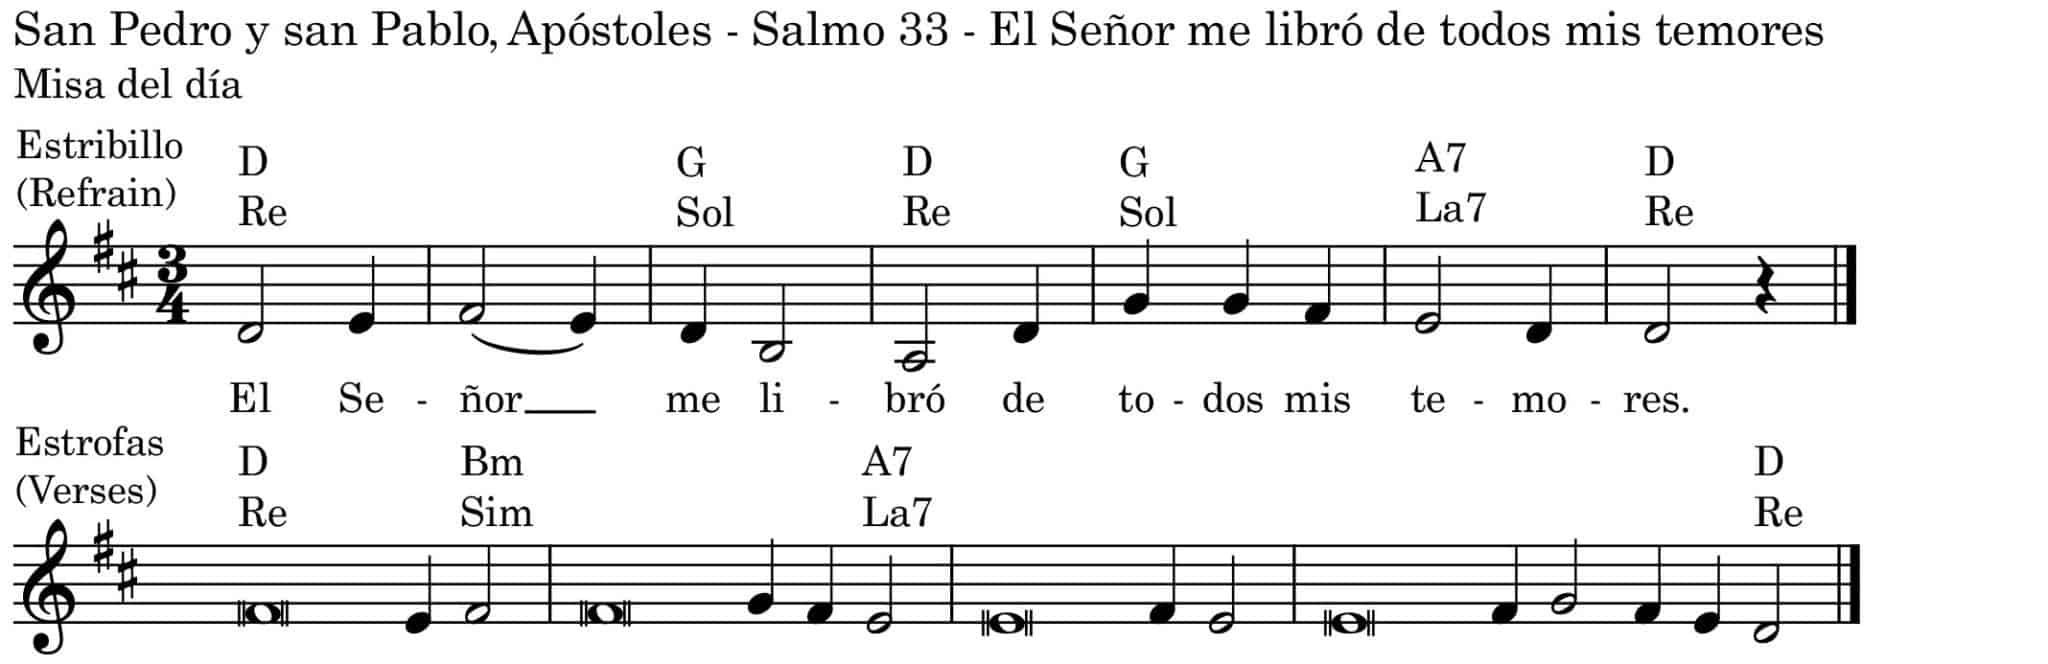 Solemnidad de san Pedro y san Pablo, Apóstoles - Misa del día - Salmo ...